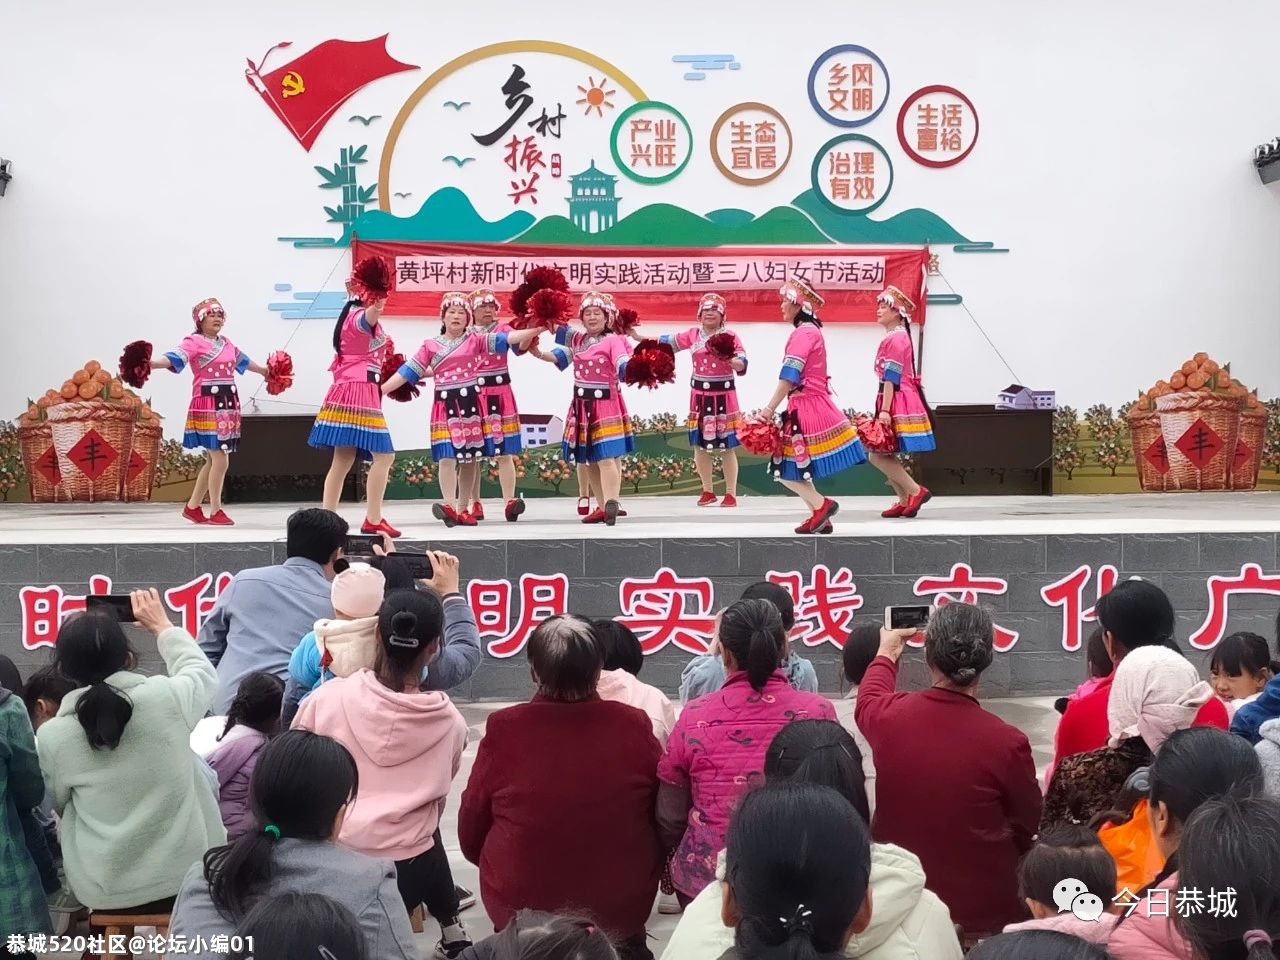 来！一起看看大恭城的妇女同胞们是如何庆祝“三八”妇女节的956 / 作者:论坛小编01 / 帖子ID:283134